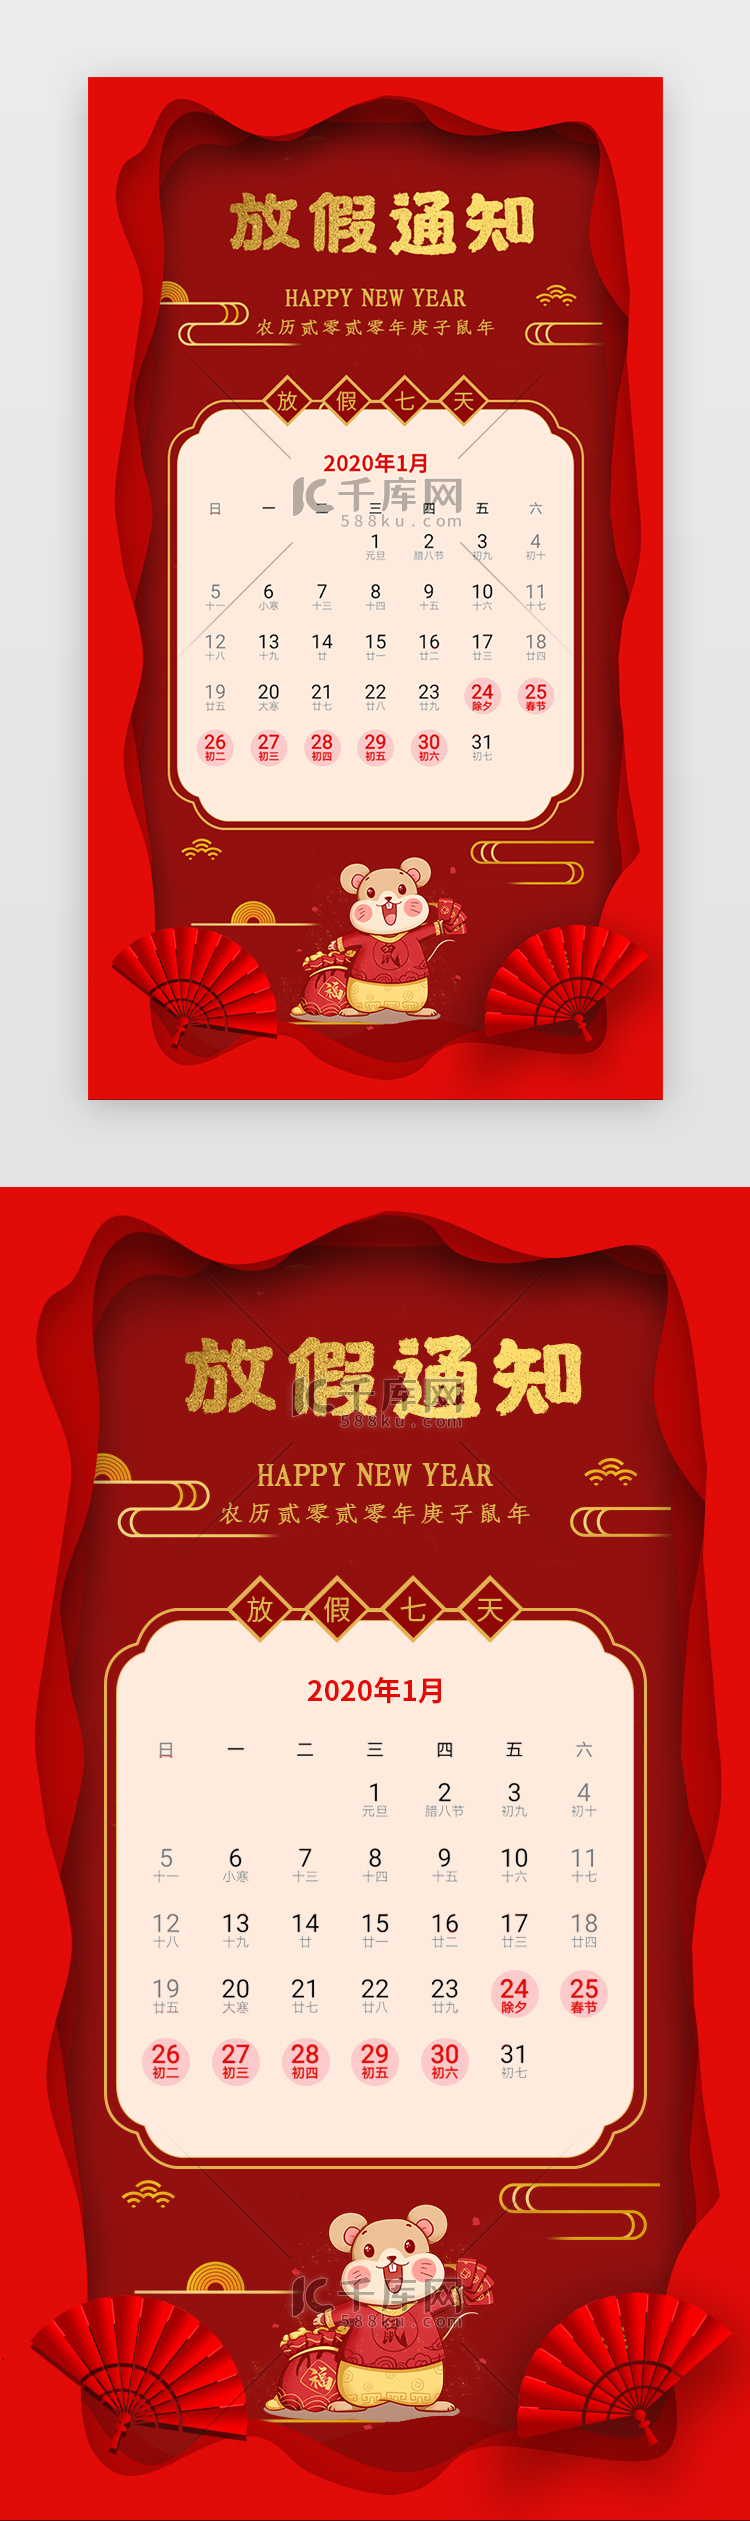 红色鼠年新年春节放假通知app闪屏